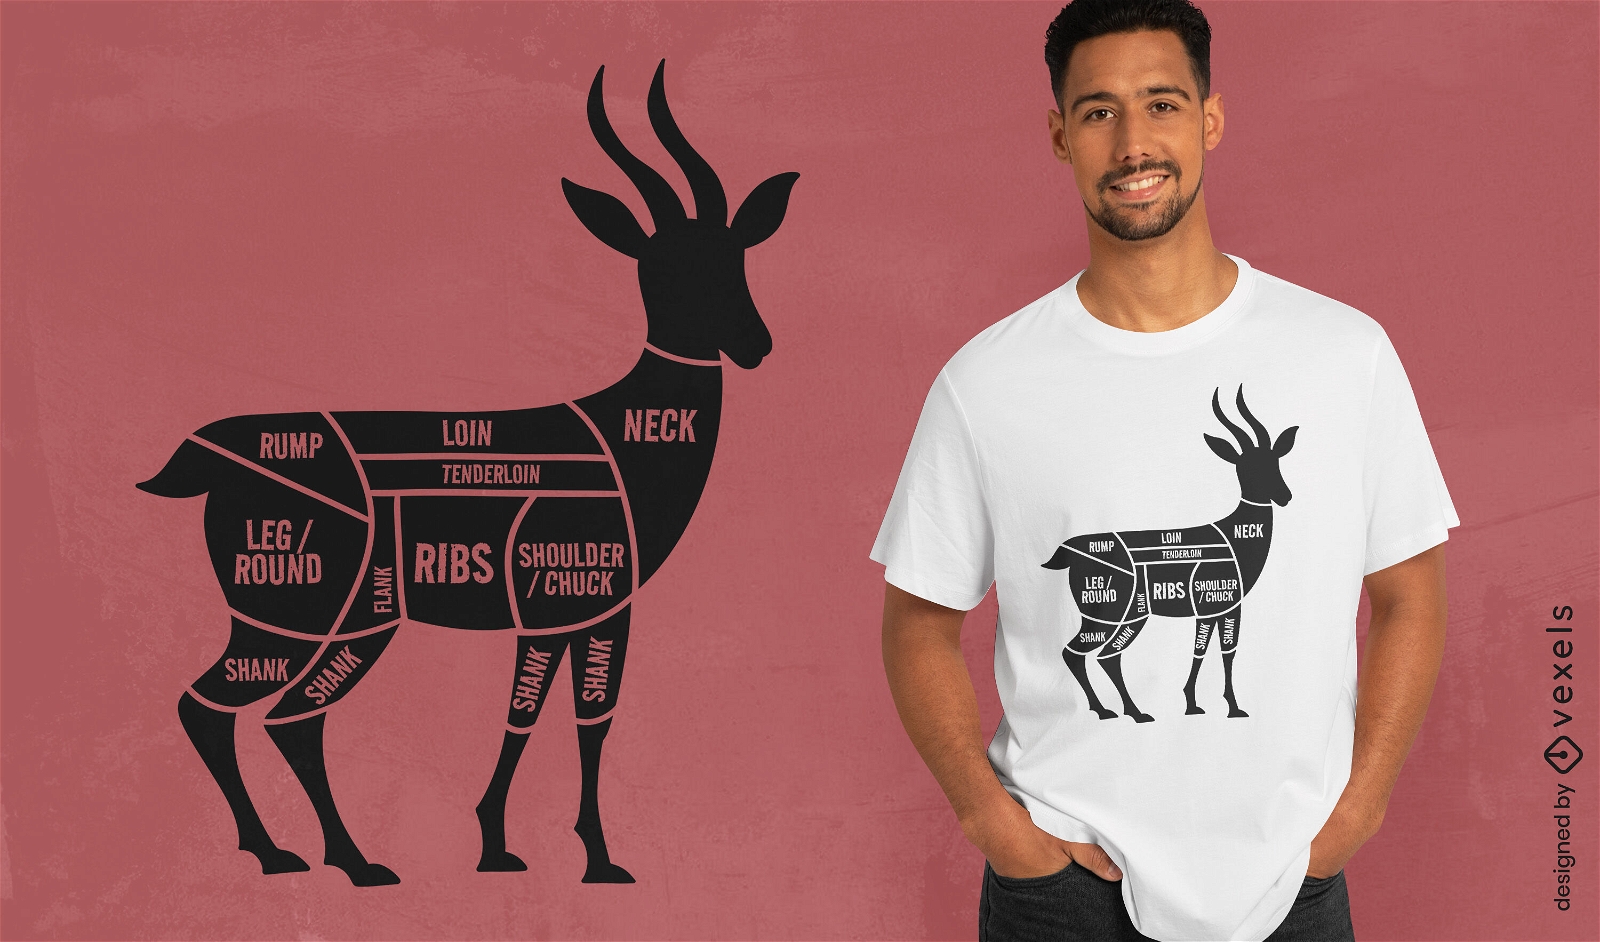 Venison butcher cuts t-shirt design